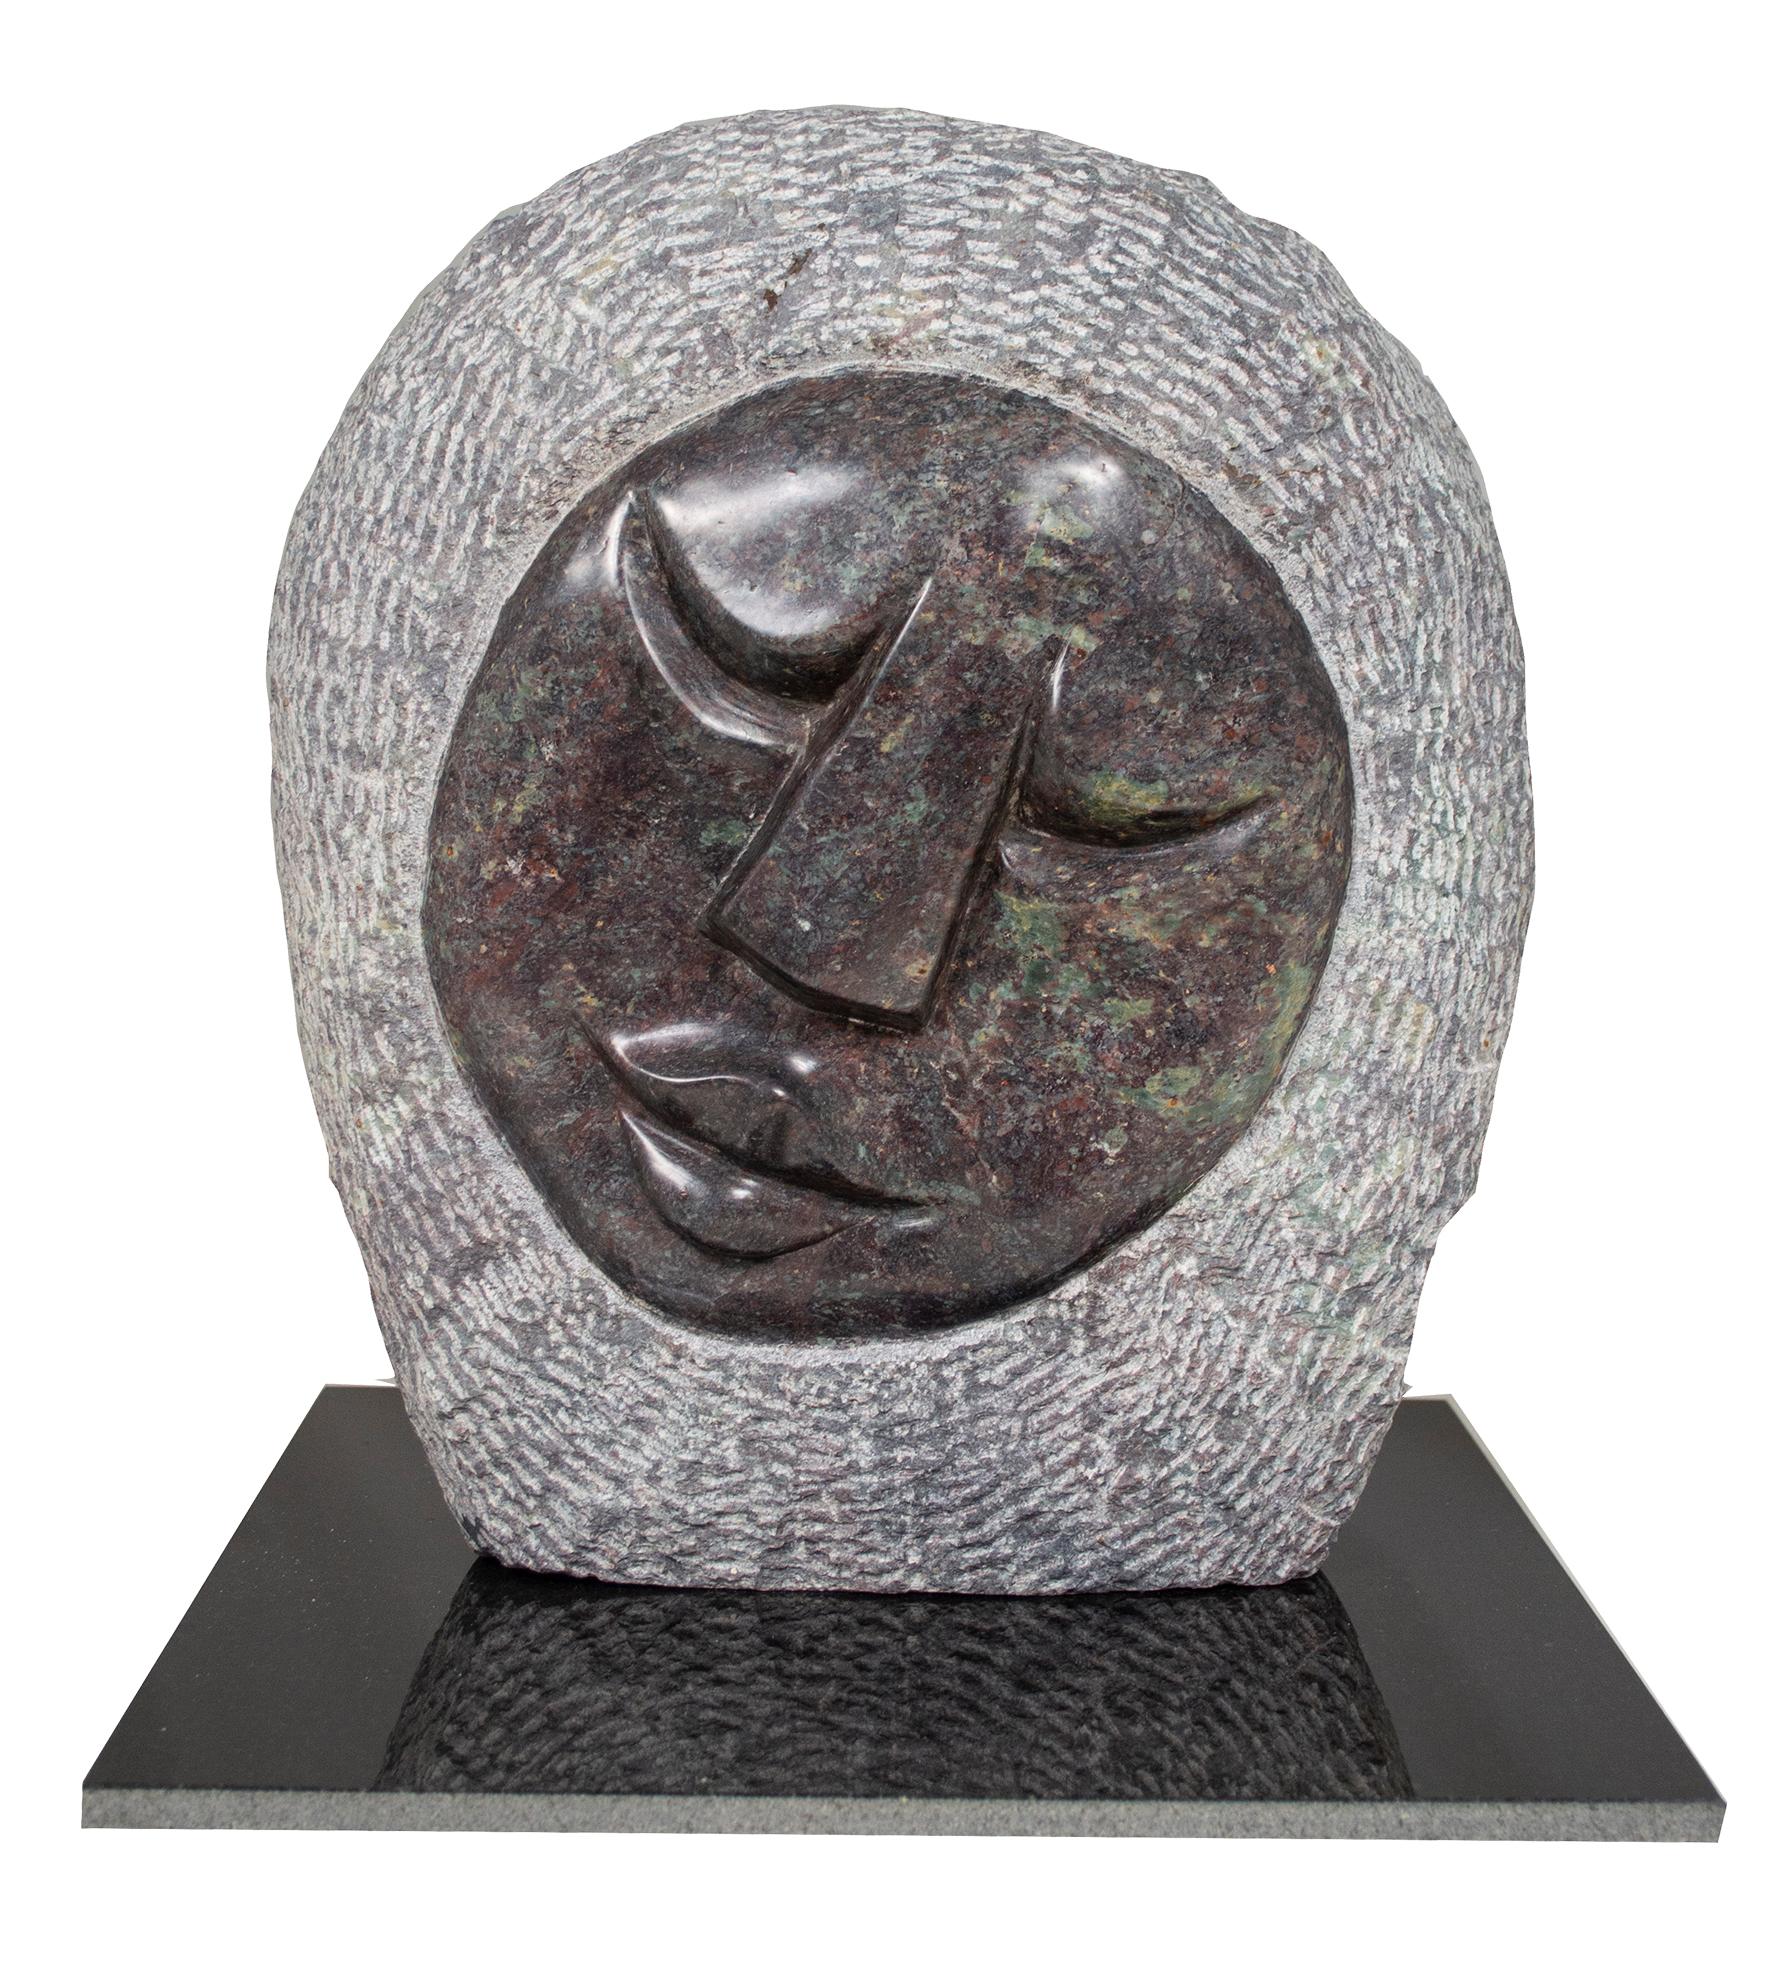 'Face' original signed cobalt stone Shona sculpture by Obert Mukumbi